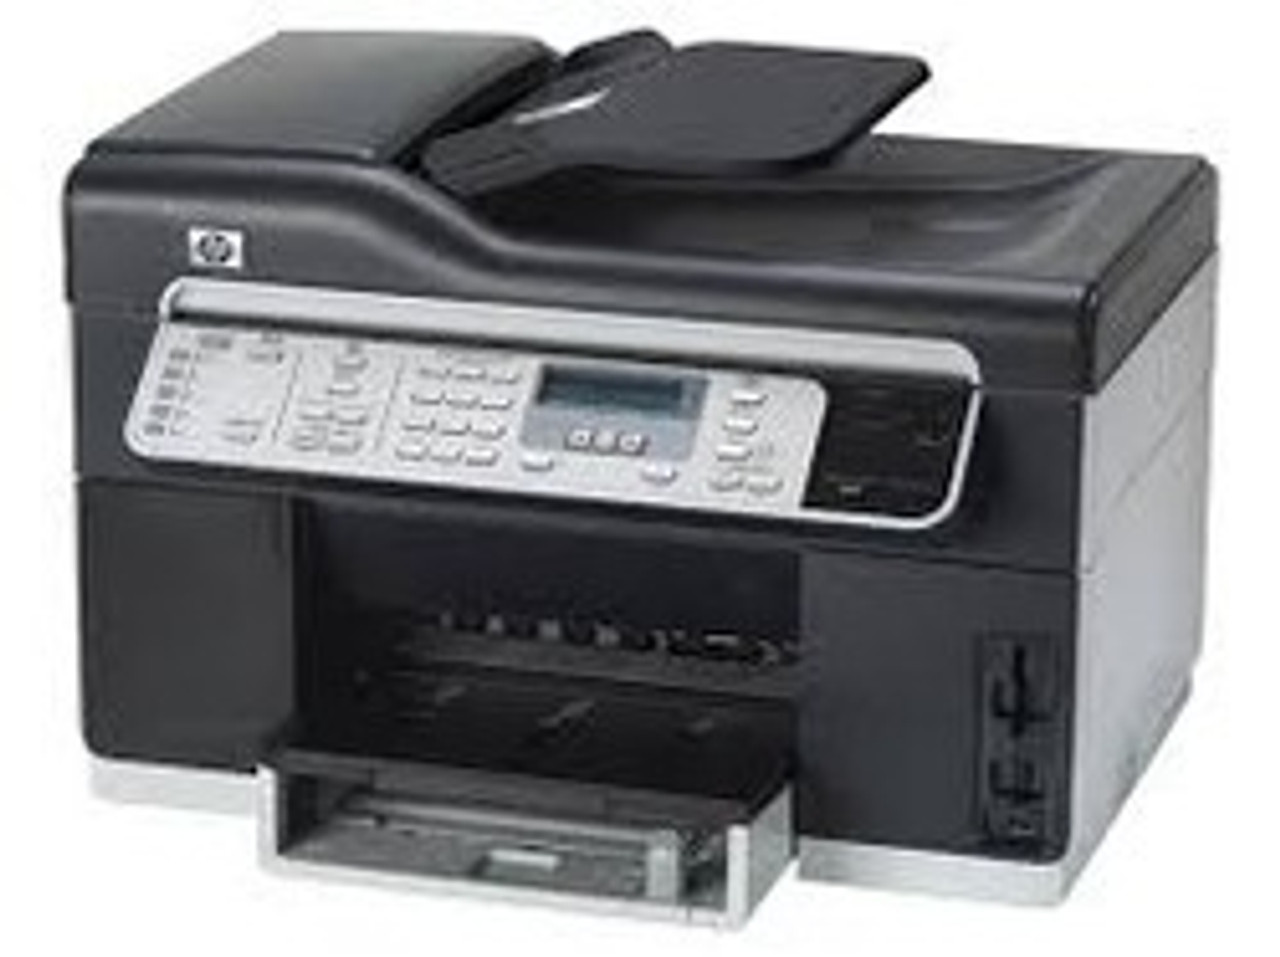 HP Officejet Pro L7500